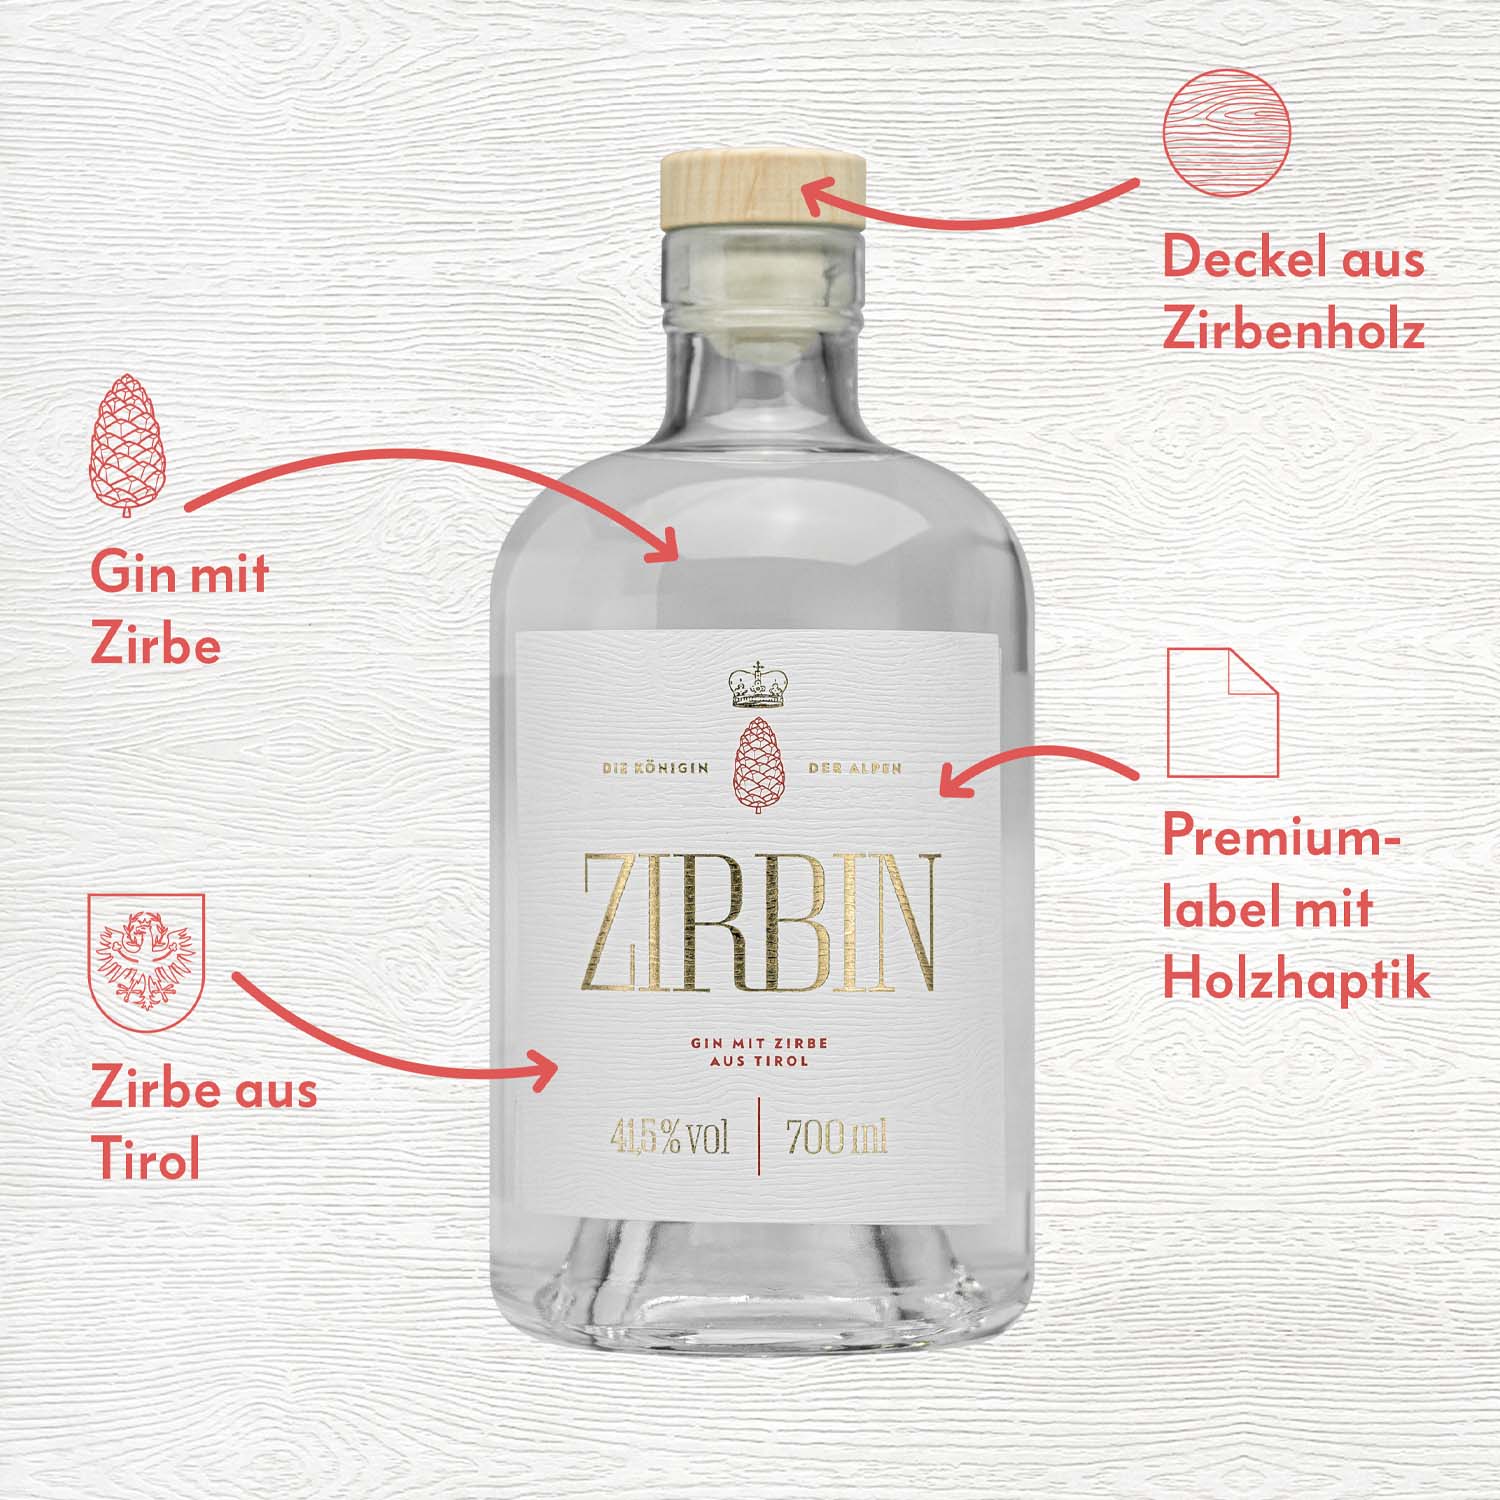 Zirbin Dry Gin Geschenksbox mit hochwertigem Glas Tumbler 0,2 lt 41,5% vol. alc.